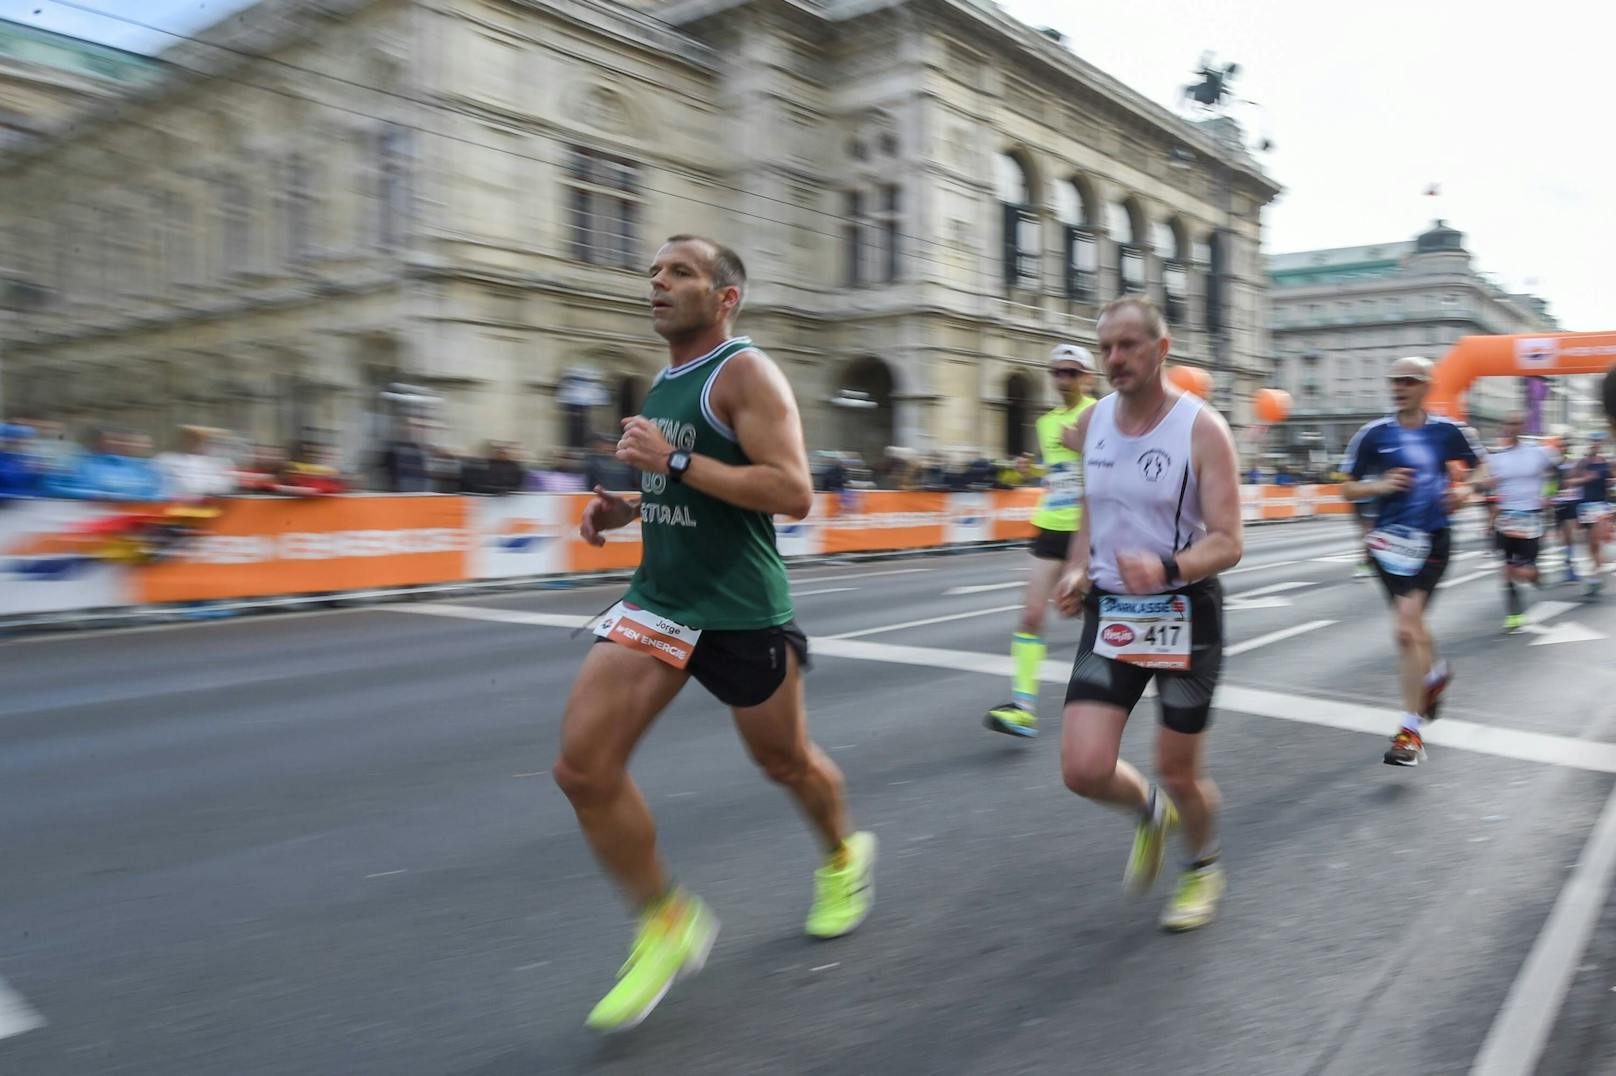 Läufer vor der Staatsoper während des Vienna City Marathon 2019. Archivbild